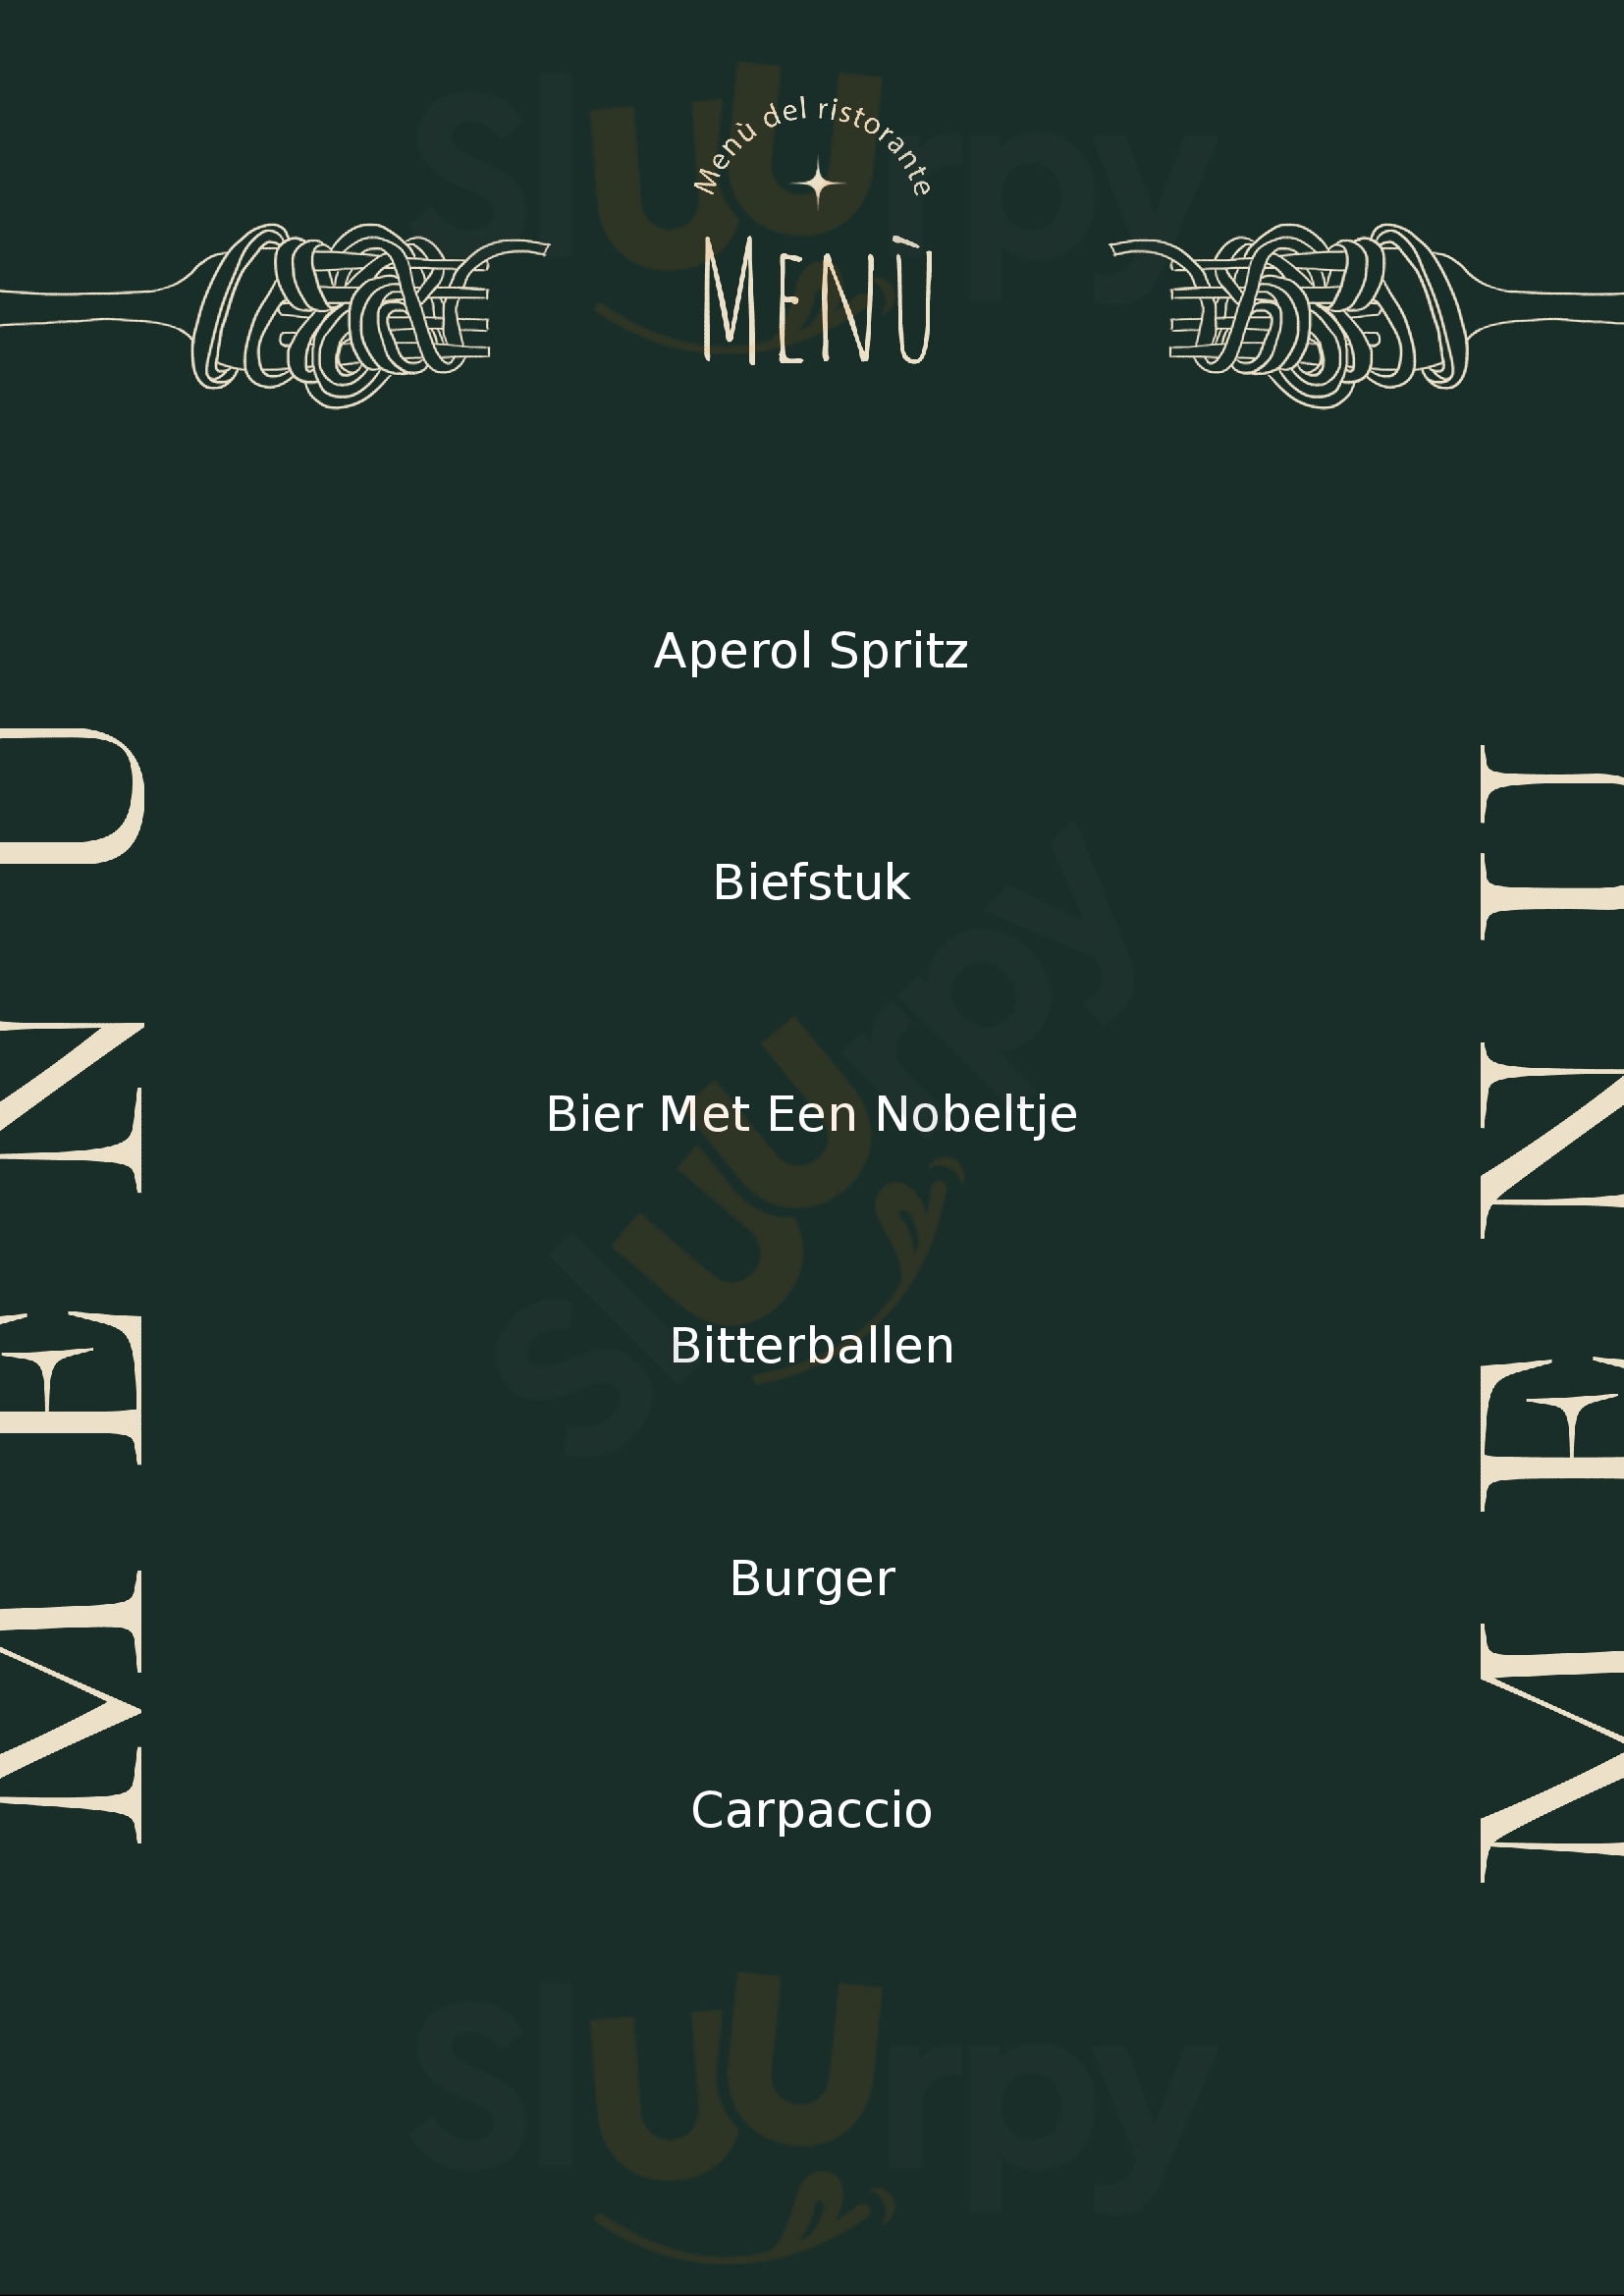 Grand Cafe Van Heeckeren Nes Menu - 1